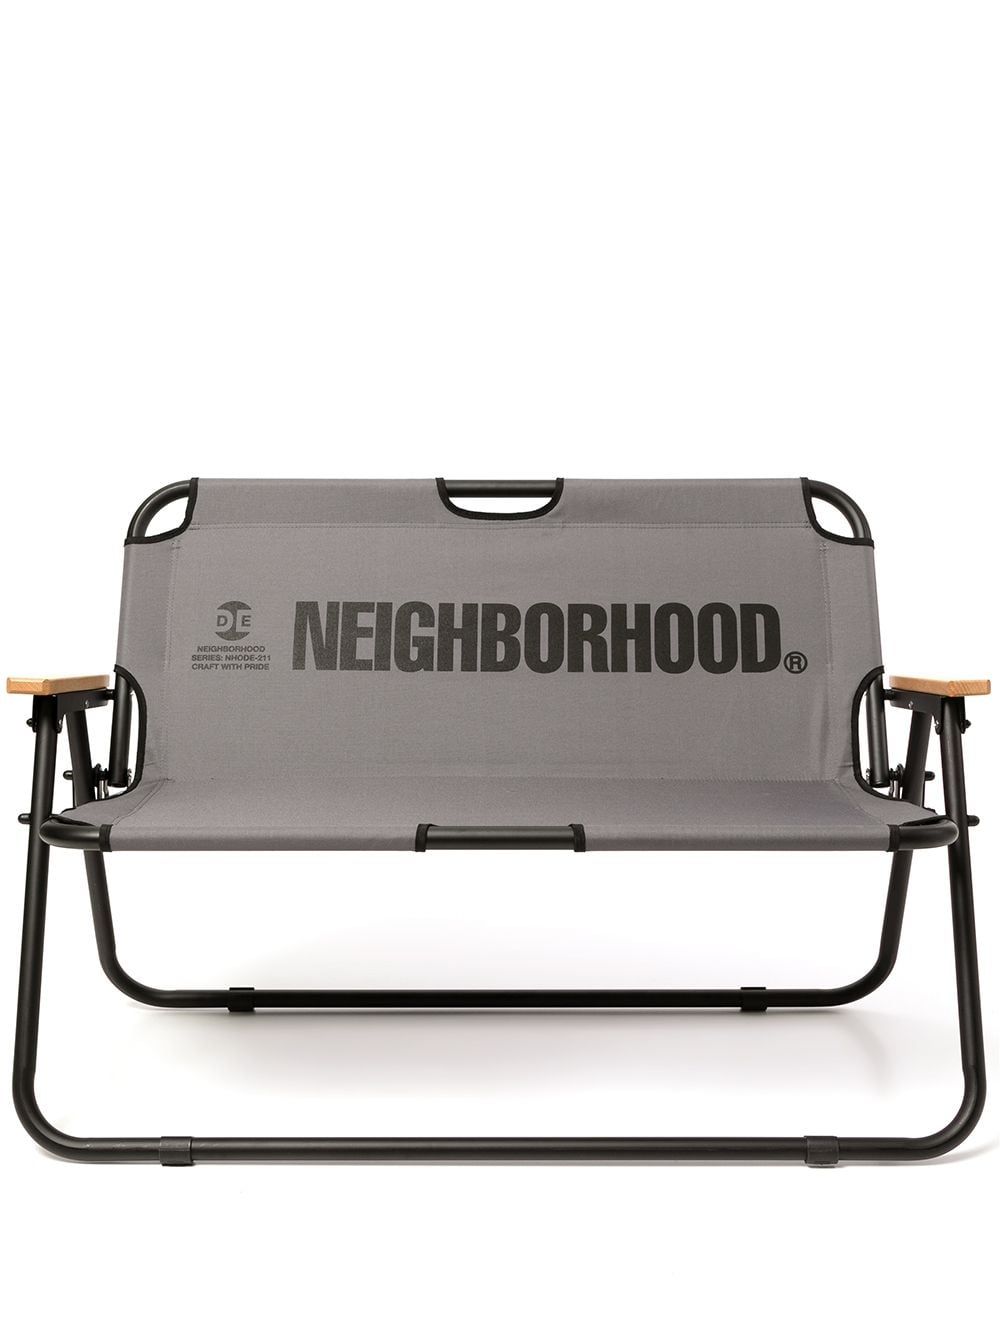 фото Neighborhood складной стул из коллаборации с output life